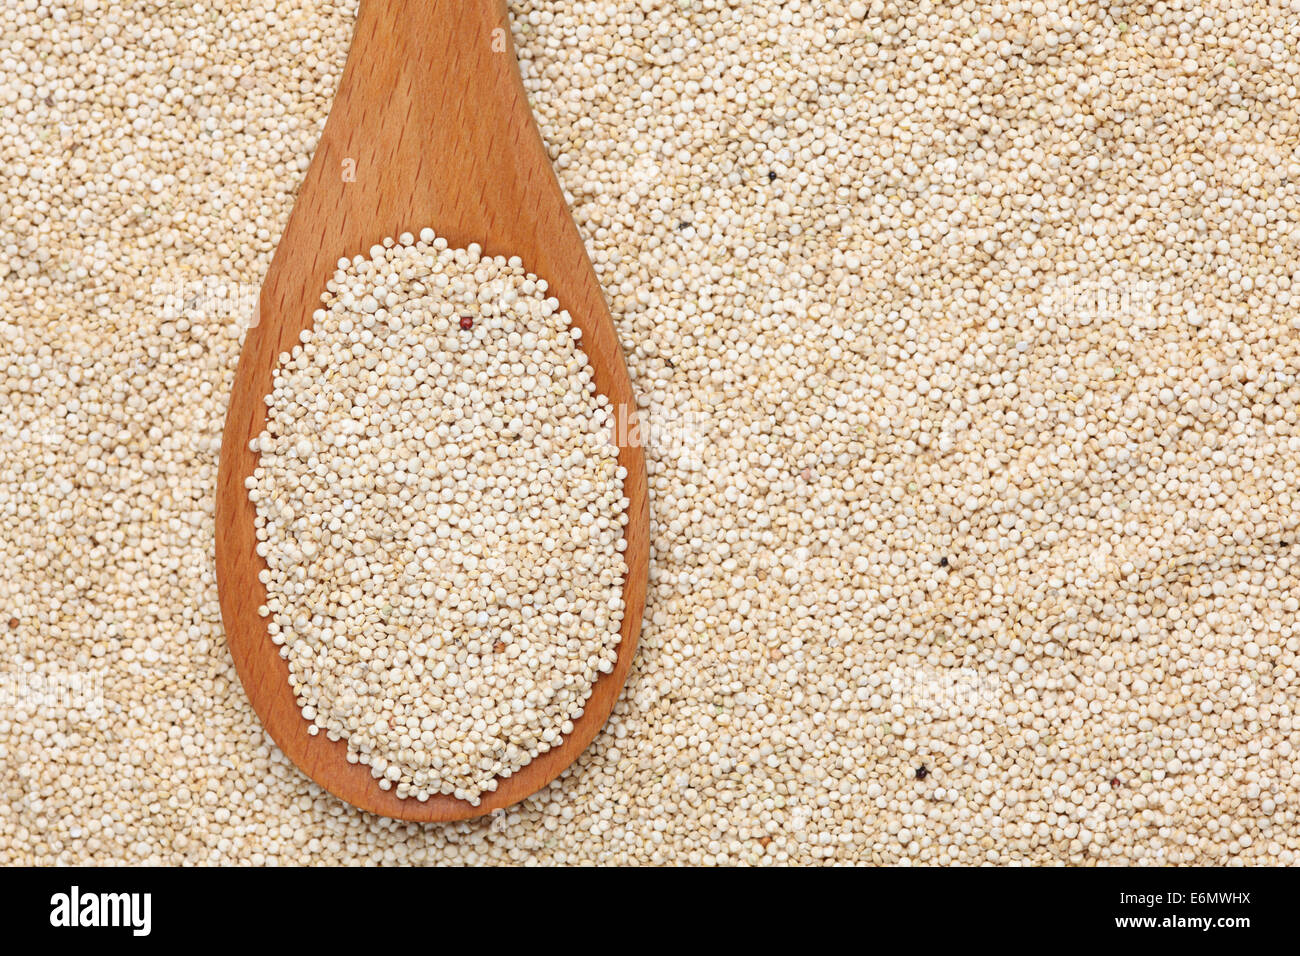 Les graines de quinoa dans une cuillère en bois sur les graines de quinoa background Banque D'Images